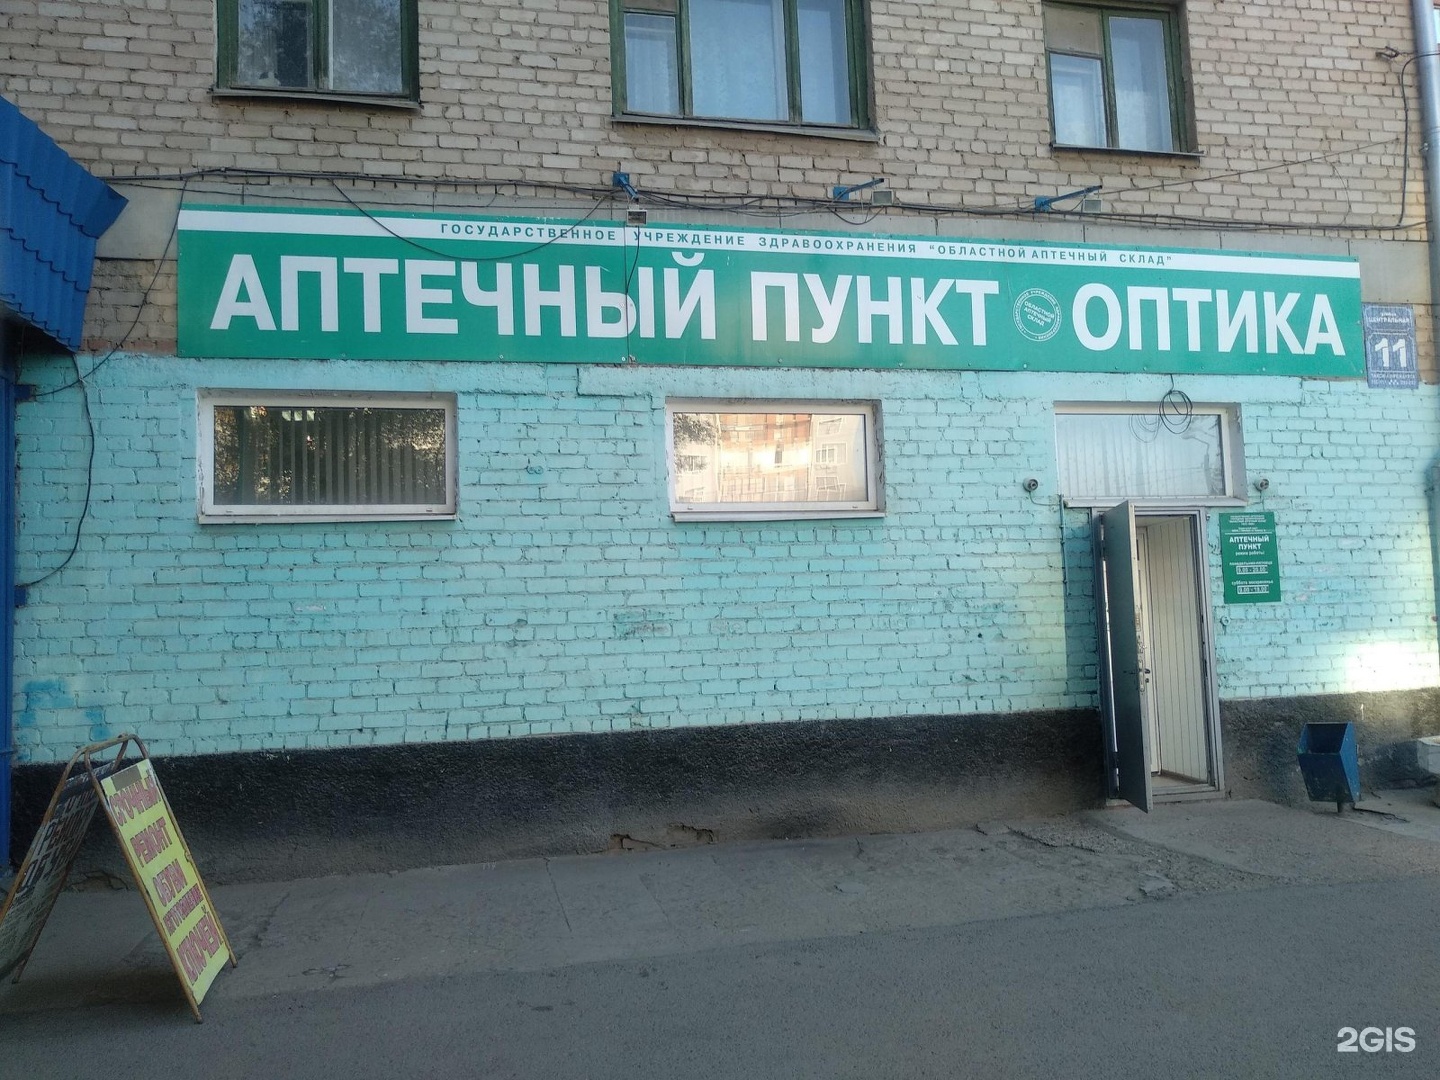 Вакансия Областной Аптечный Склад Челябинск